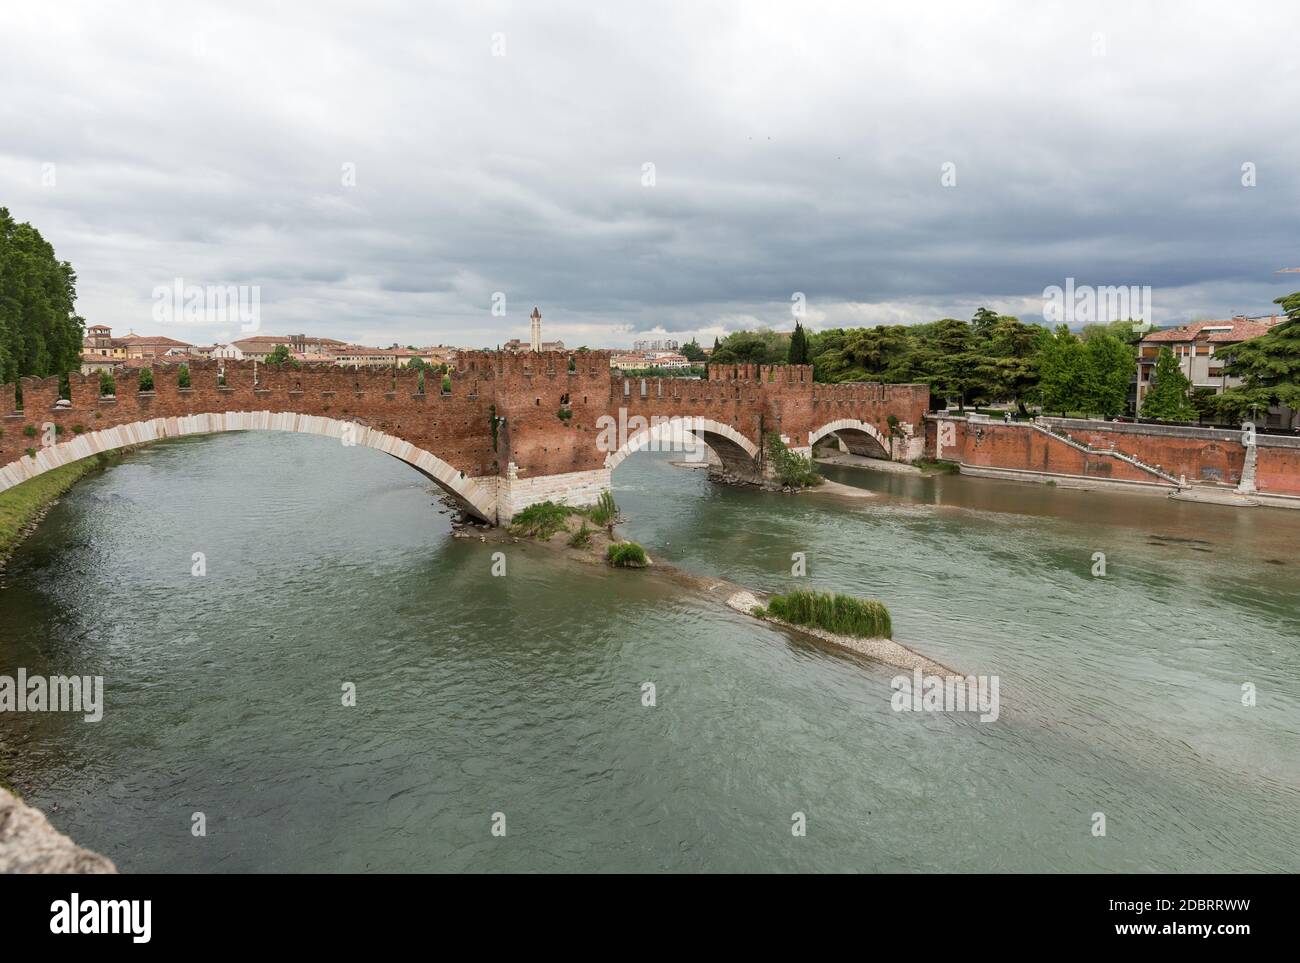 Il Ponte pietra, un tempo noto come Pons Marmoreus, è un ponte ad arco romano che attraversa il fiume Adige a Verona. Il ponte era co Foto Stock